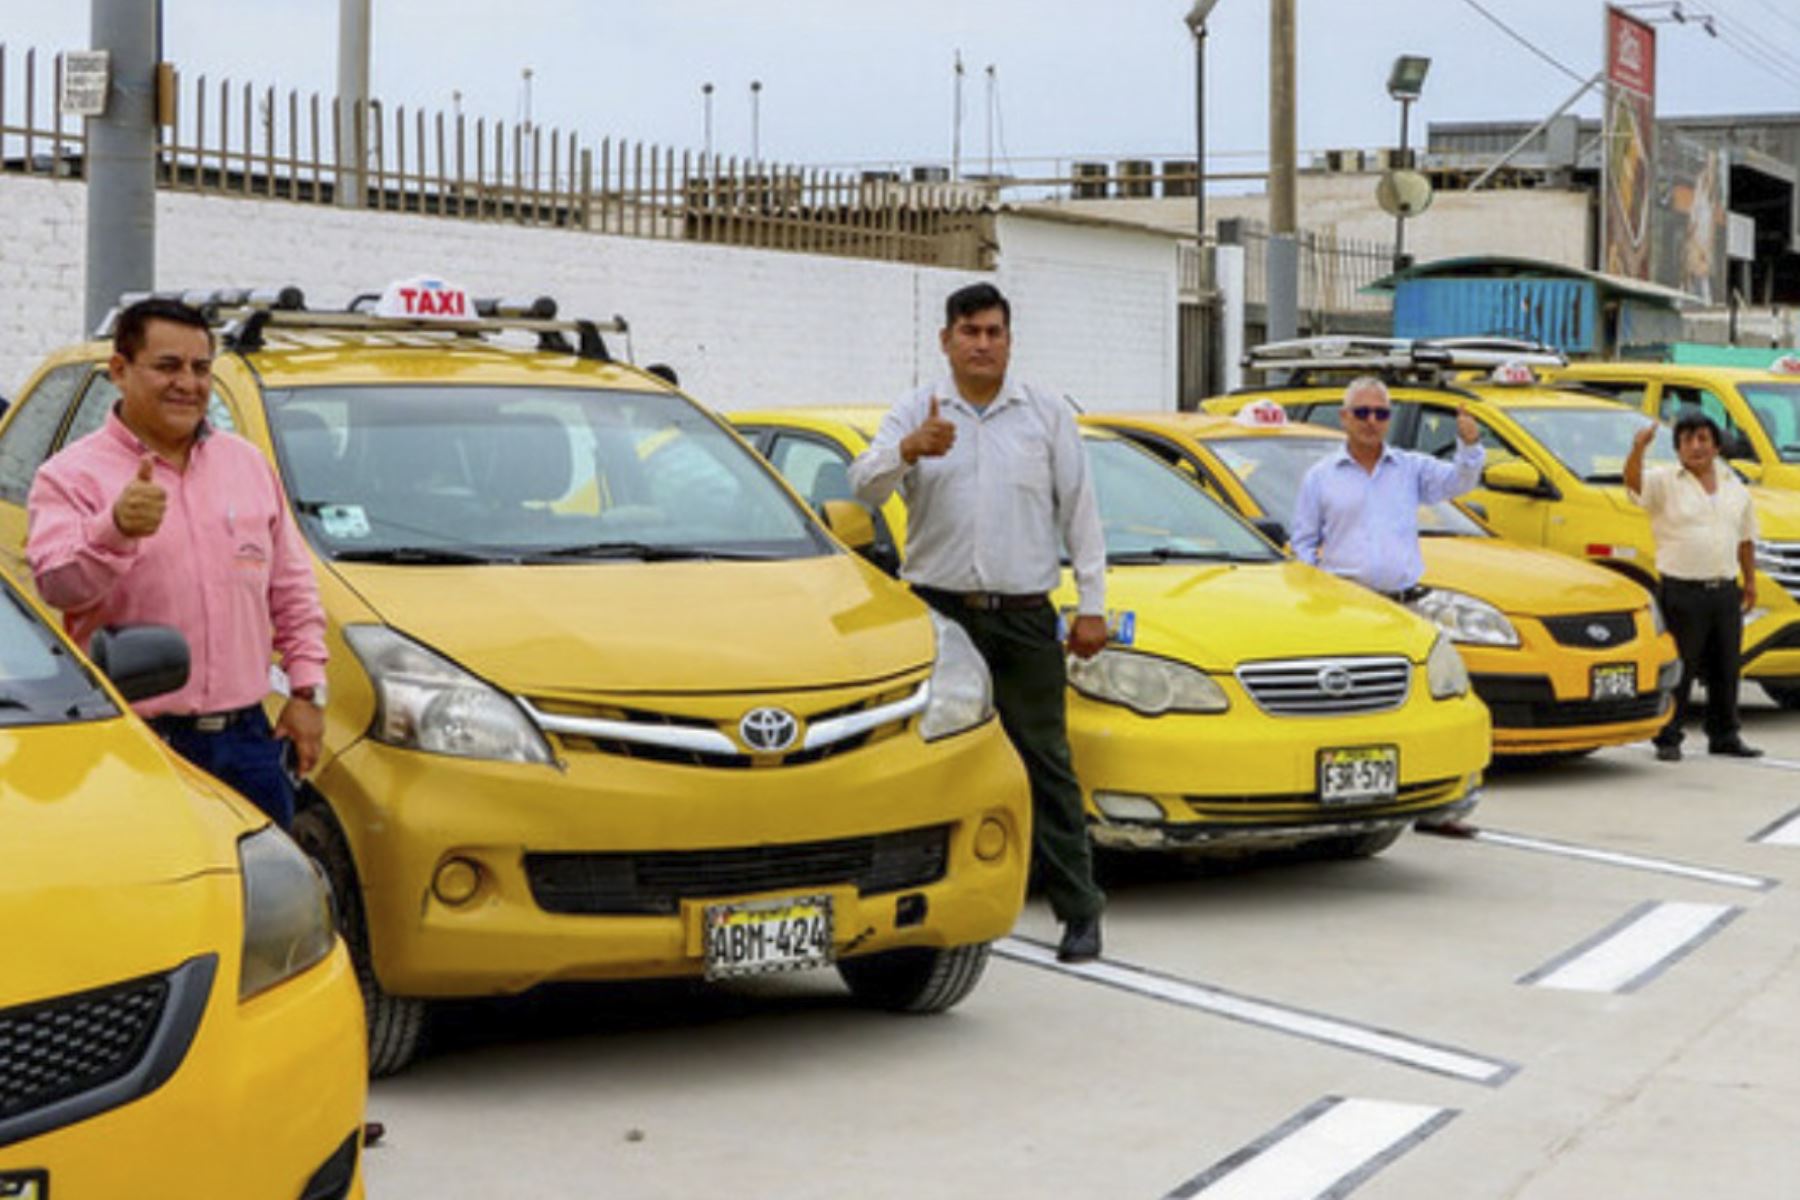 ATU implementa paradero autorizado de taxis para pasajeros del aeropuerto Jorge Chávez. Foto: ANDINA/Difusión